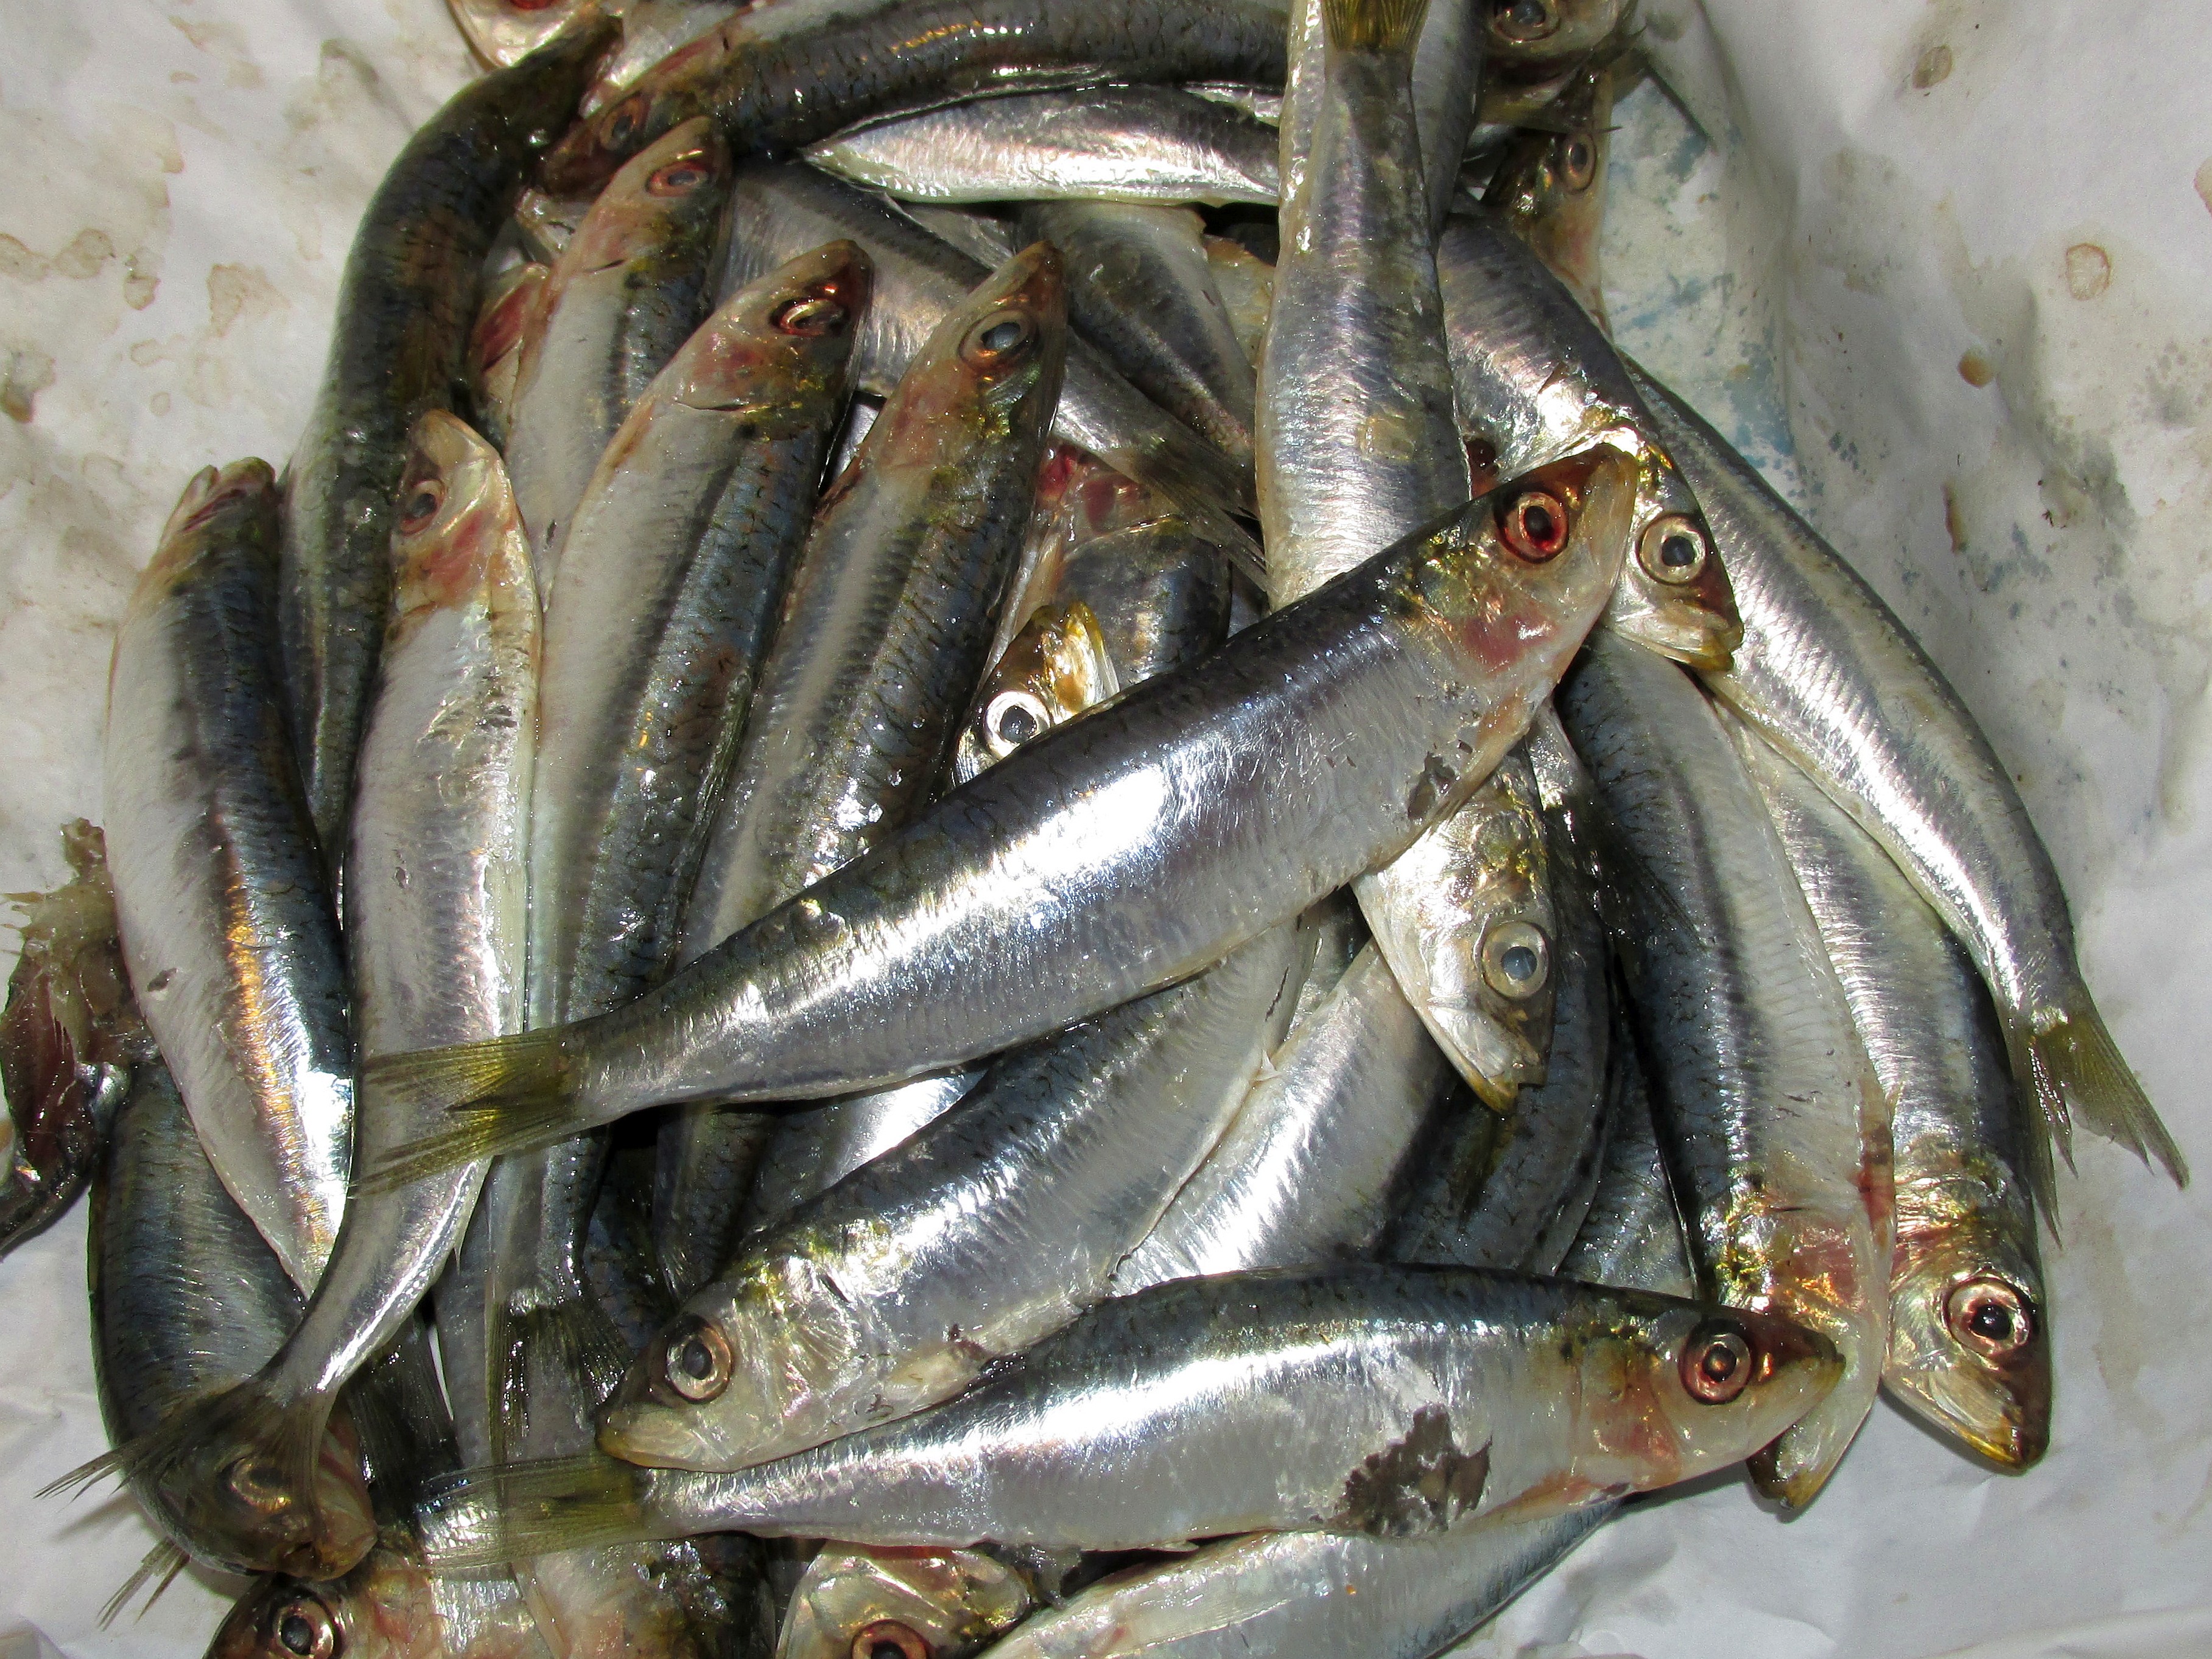 Le sardine al Muccassassina sodalizzano con la comunità Lgbt 1